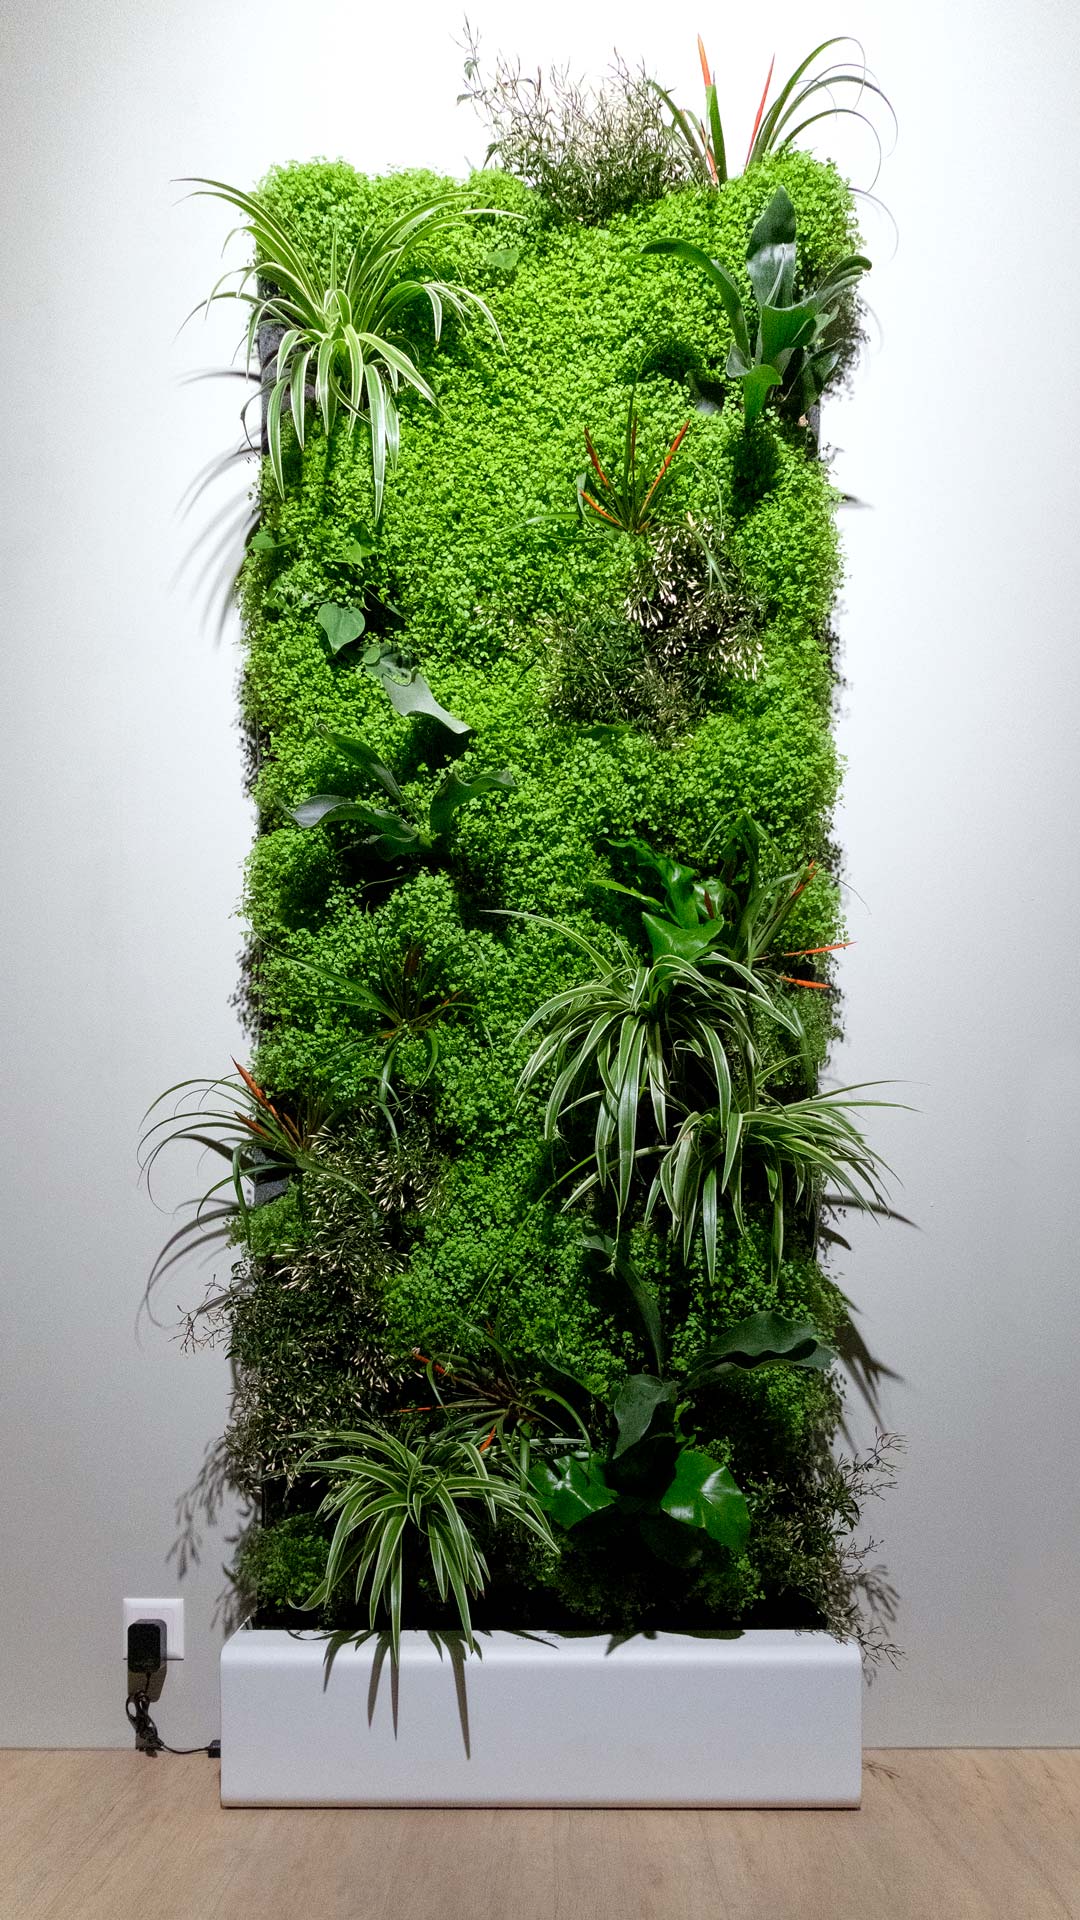 ein vertikales gartensystem mit verschiedenen grünpflanzen und moosartig, installiert an einer wand vor einem schlichten hintergrund und beleuchtet durch deckenbeleuchtung.